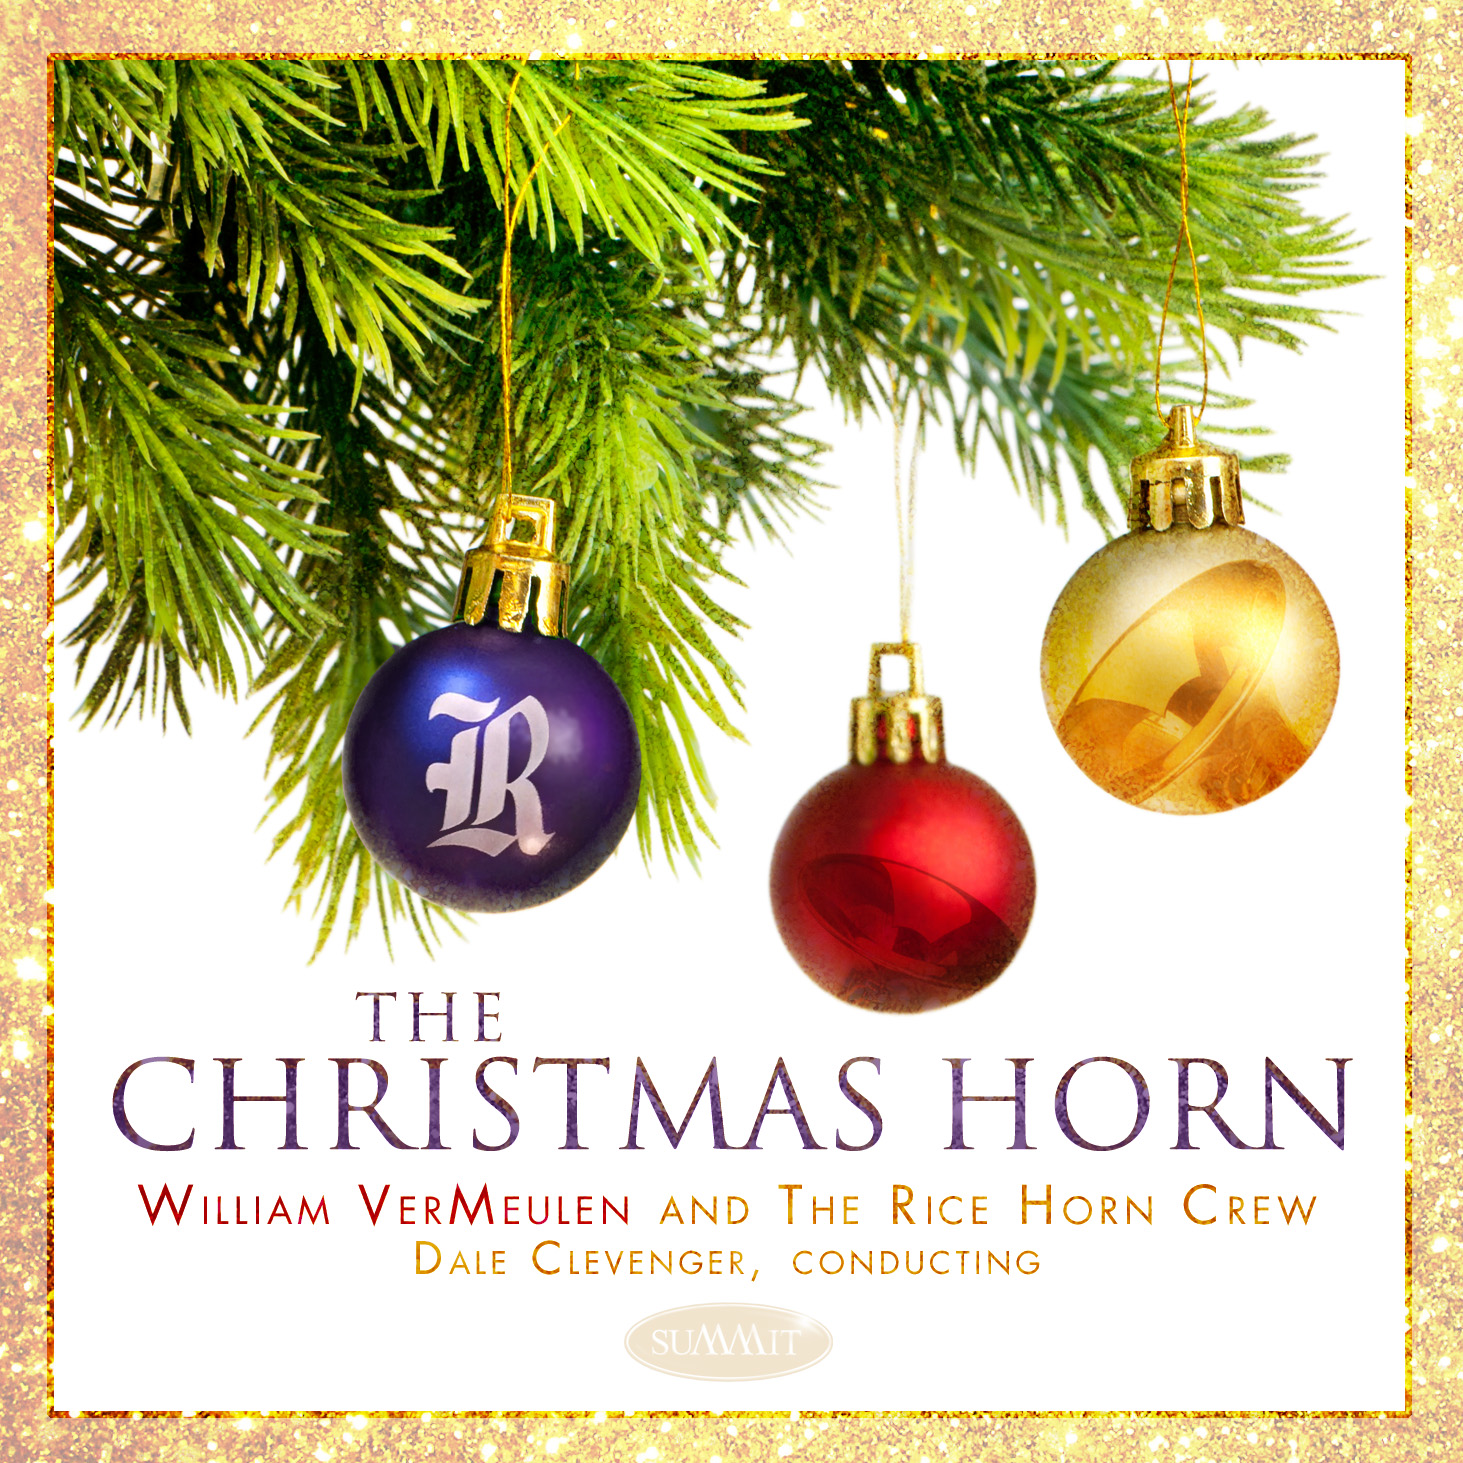 Artwork for The Christmas Horn album